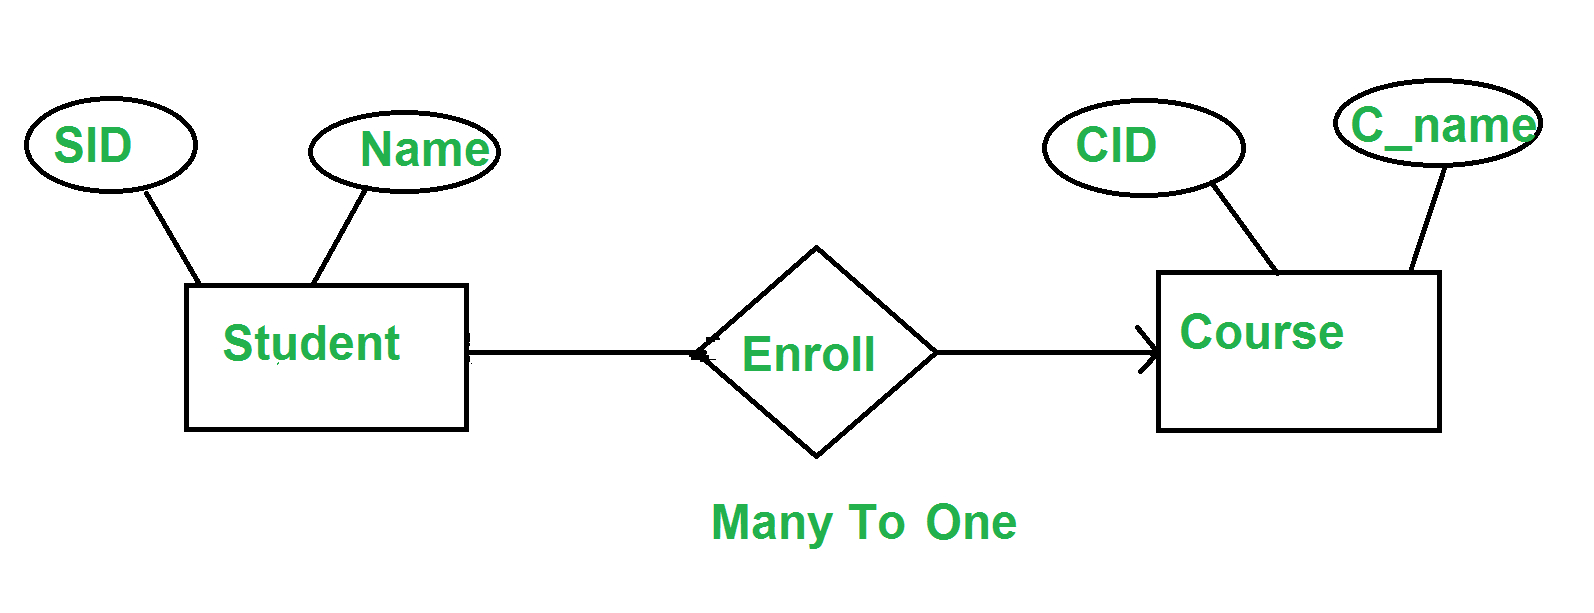 Minimization Of Er Diagrams - Geeksforgeeks regarding Er Diagram 1 To 1 Relationship